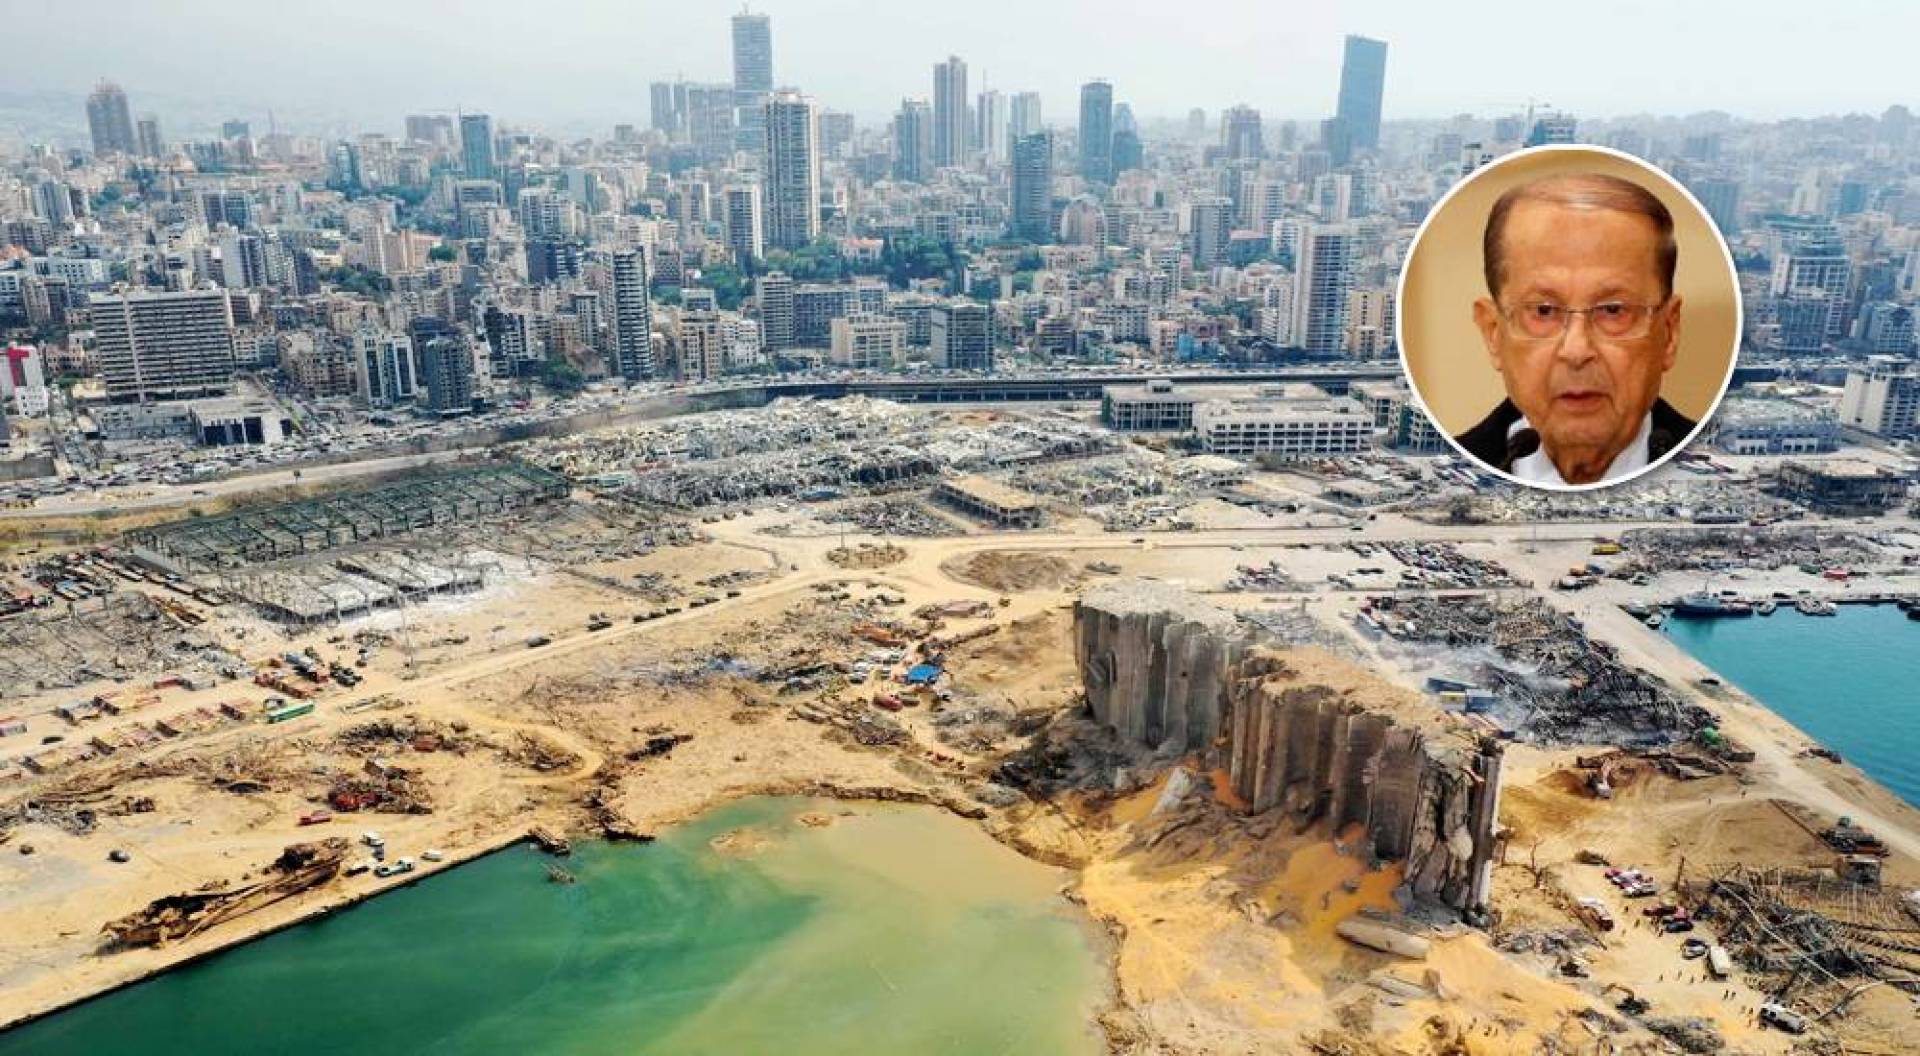 الرئيس اللبناني يرفض إجراء تحقيق دولي في انفجار مرفأ بيروت 